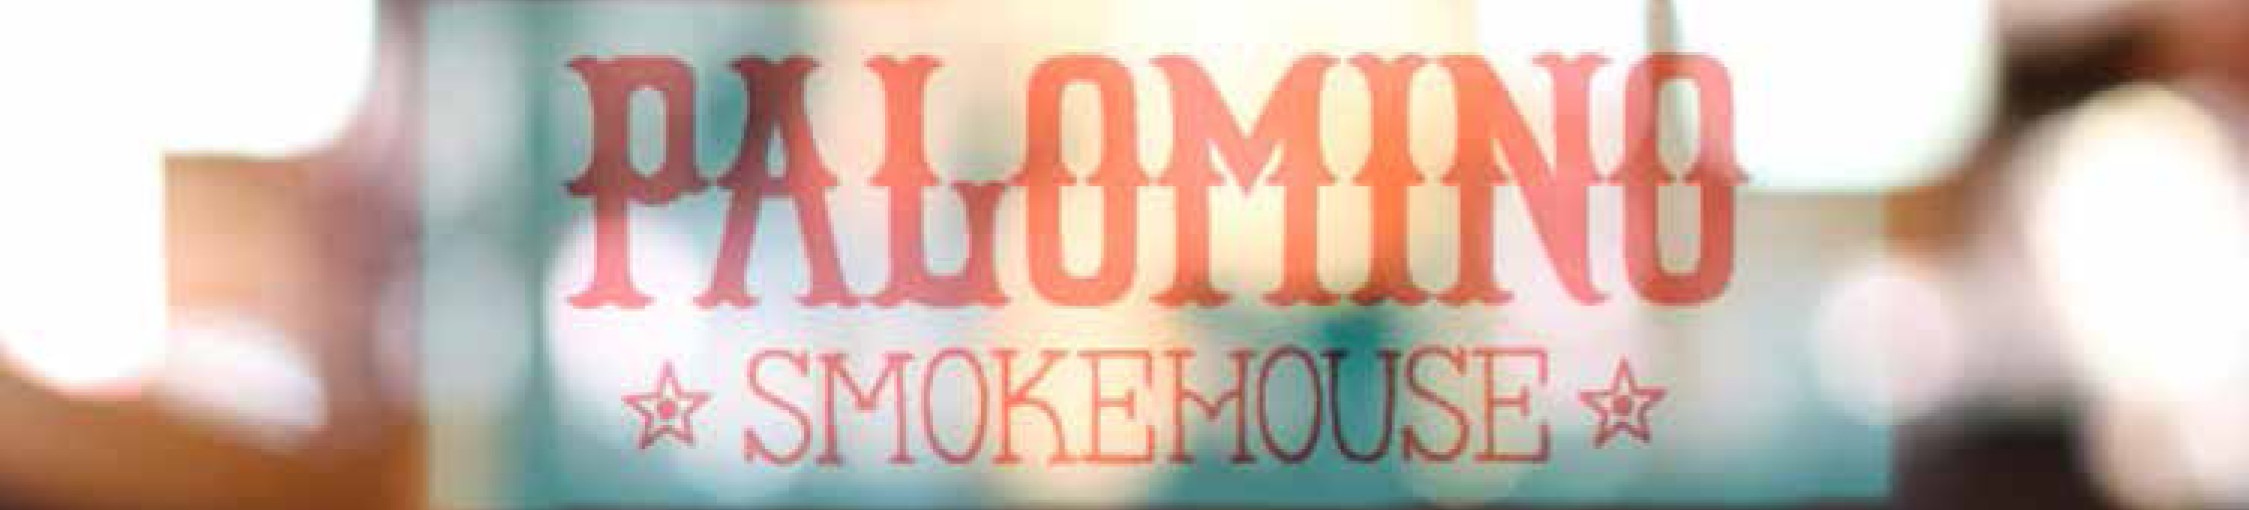 The Palomino Smokehouse